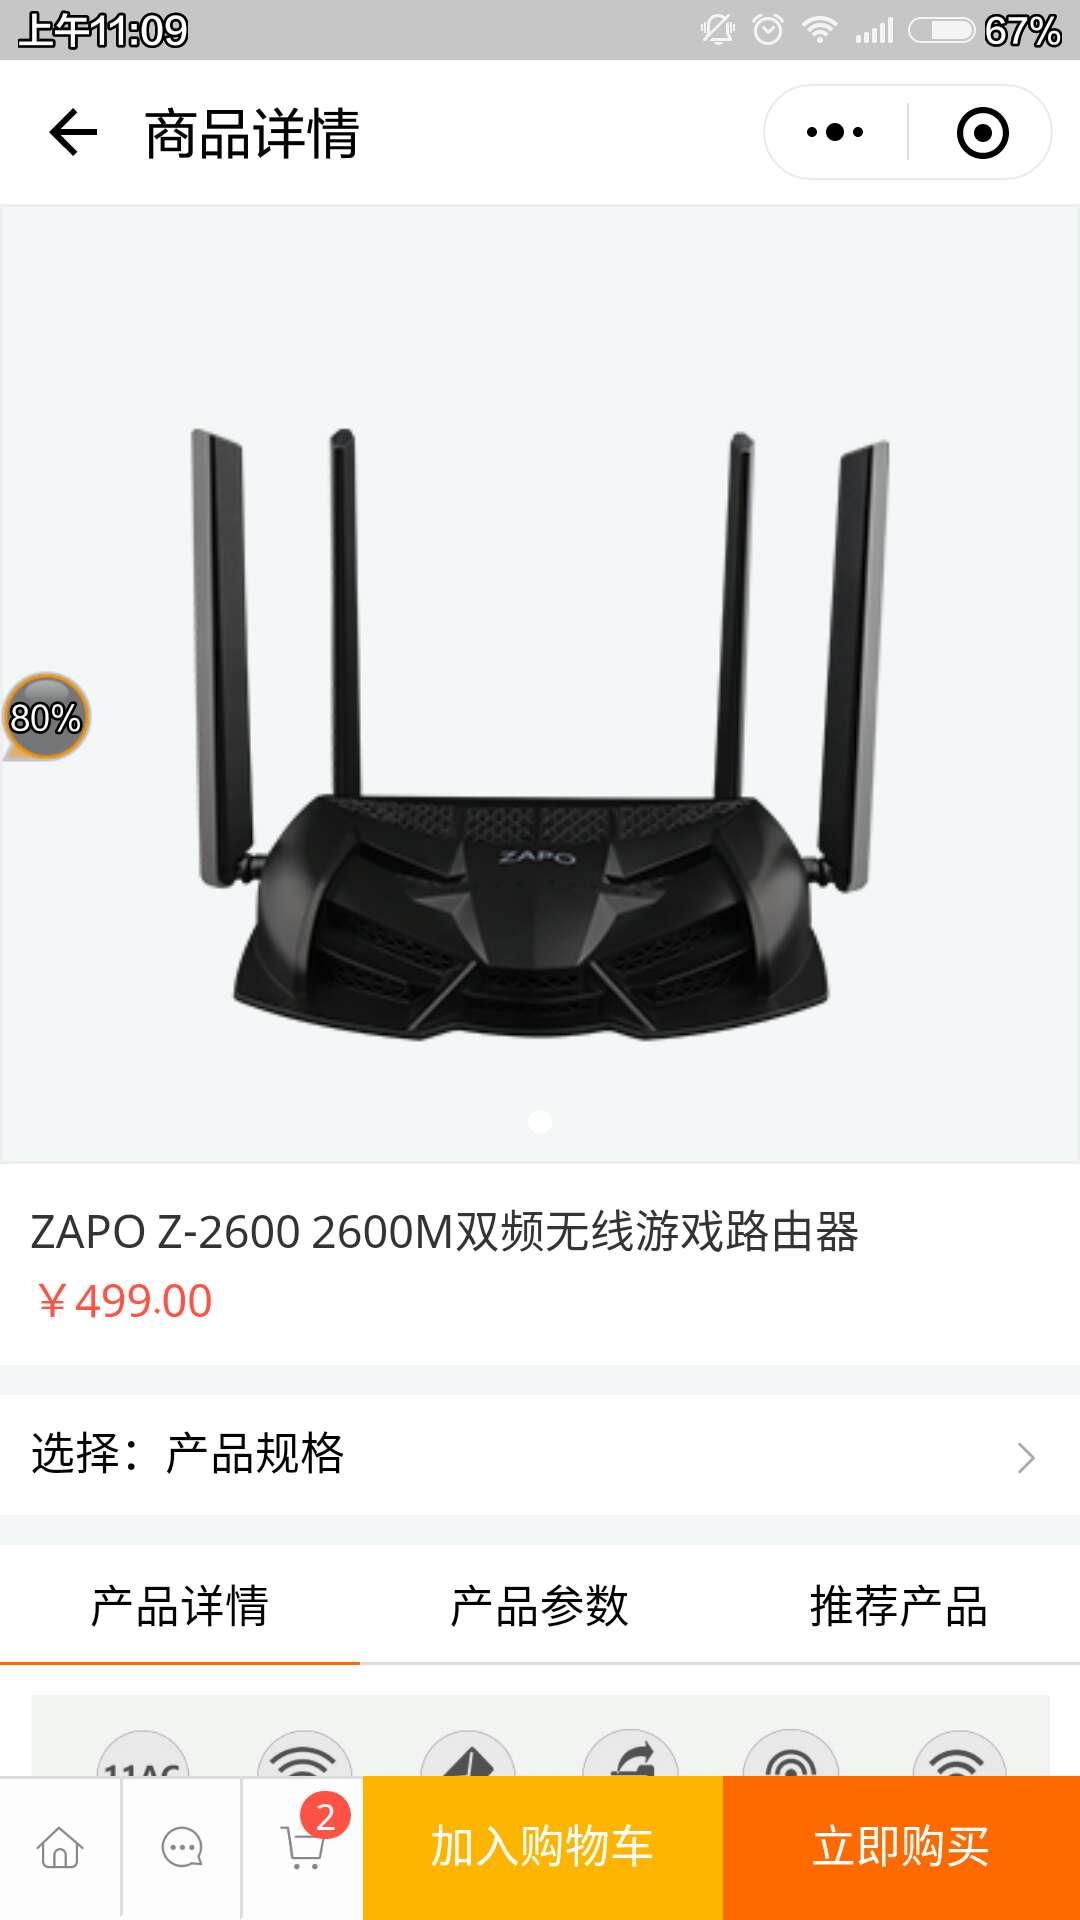 ZAPO品牌无线路由器_ZAPO品牌无线路由器小程序_ZAPO品牌无线路由器微信小程序